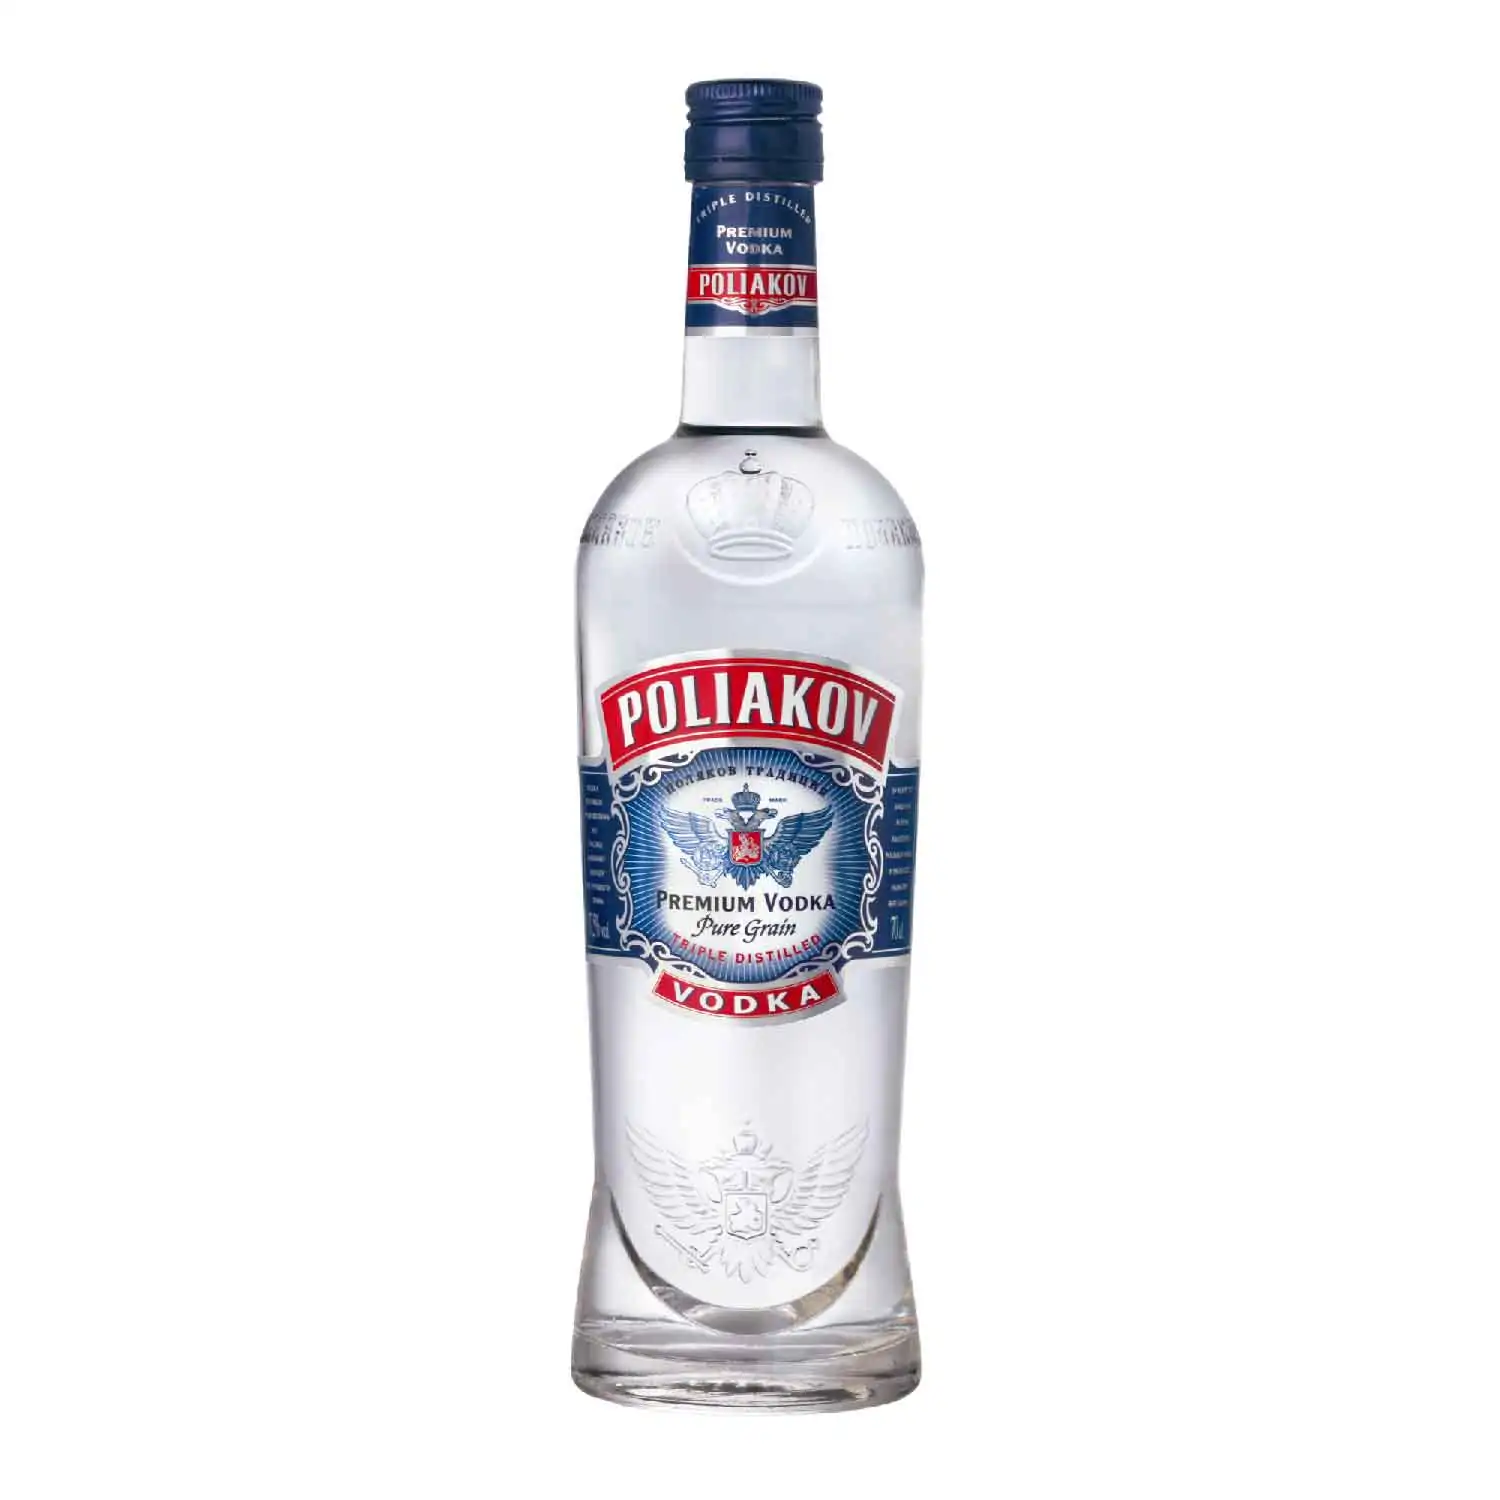 Poliakov vodka 1l Alc 37,5% - Buy at Real Tobacco